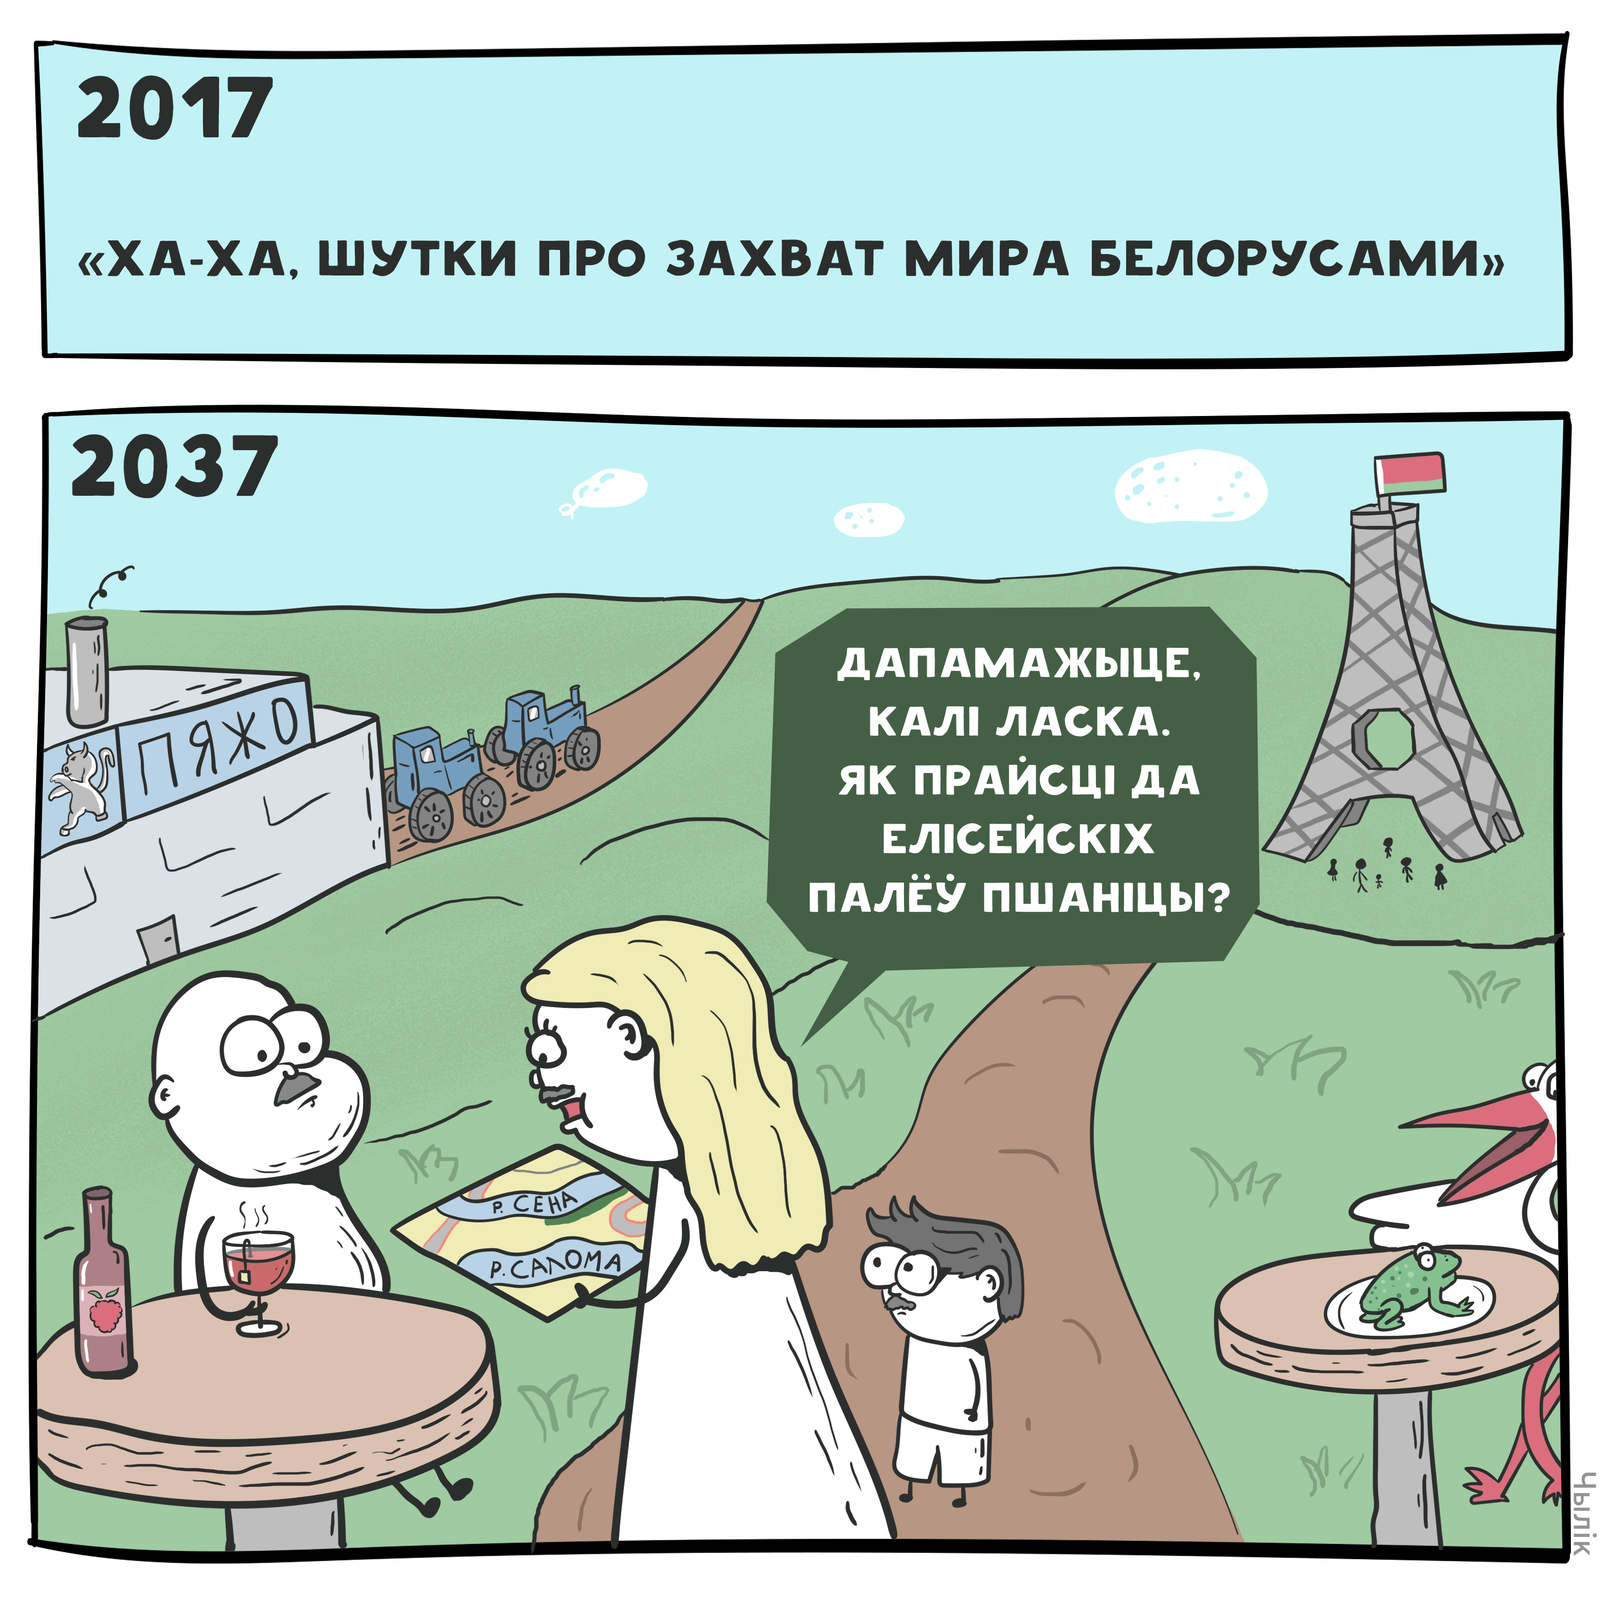 Про захват мир. Шутки. Анекдоты про белорусов. Смешные комиксы.